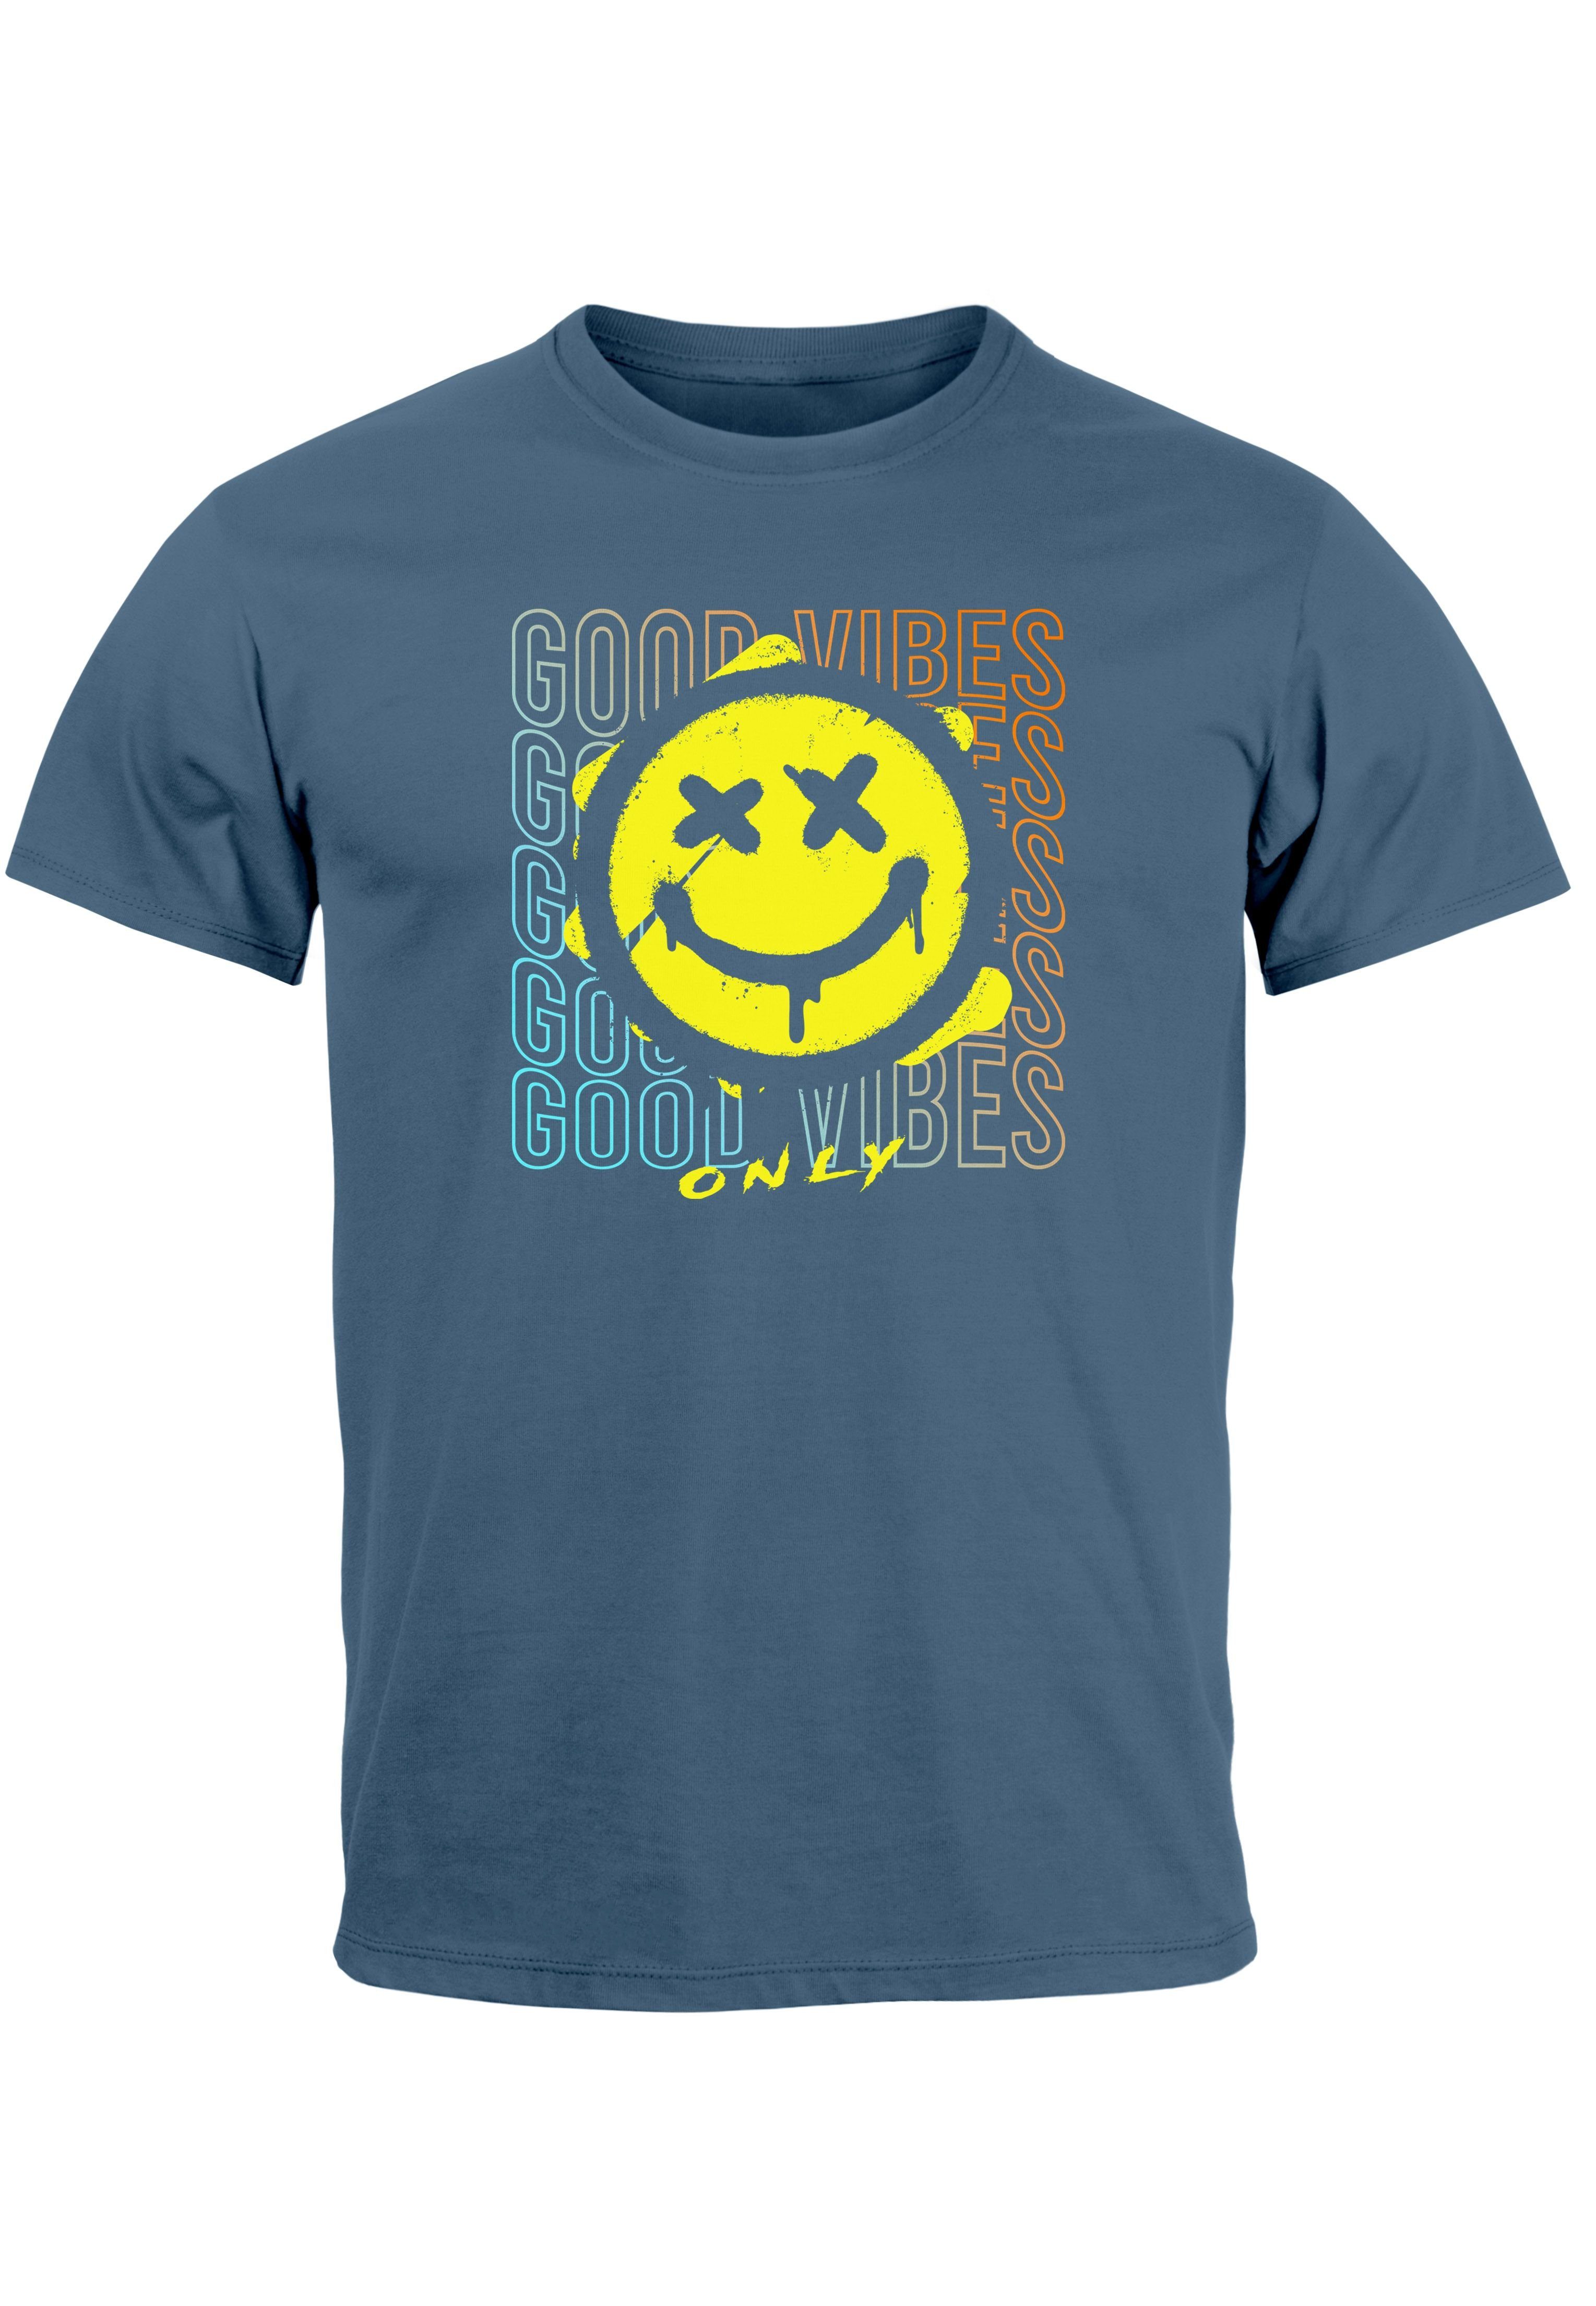 Bedruckt Aufdruck Print denim Neverless Vibes Smiling Face Teachwe blue Print-Shirt T-Shirt Good Print Herren mit